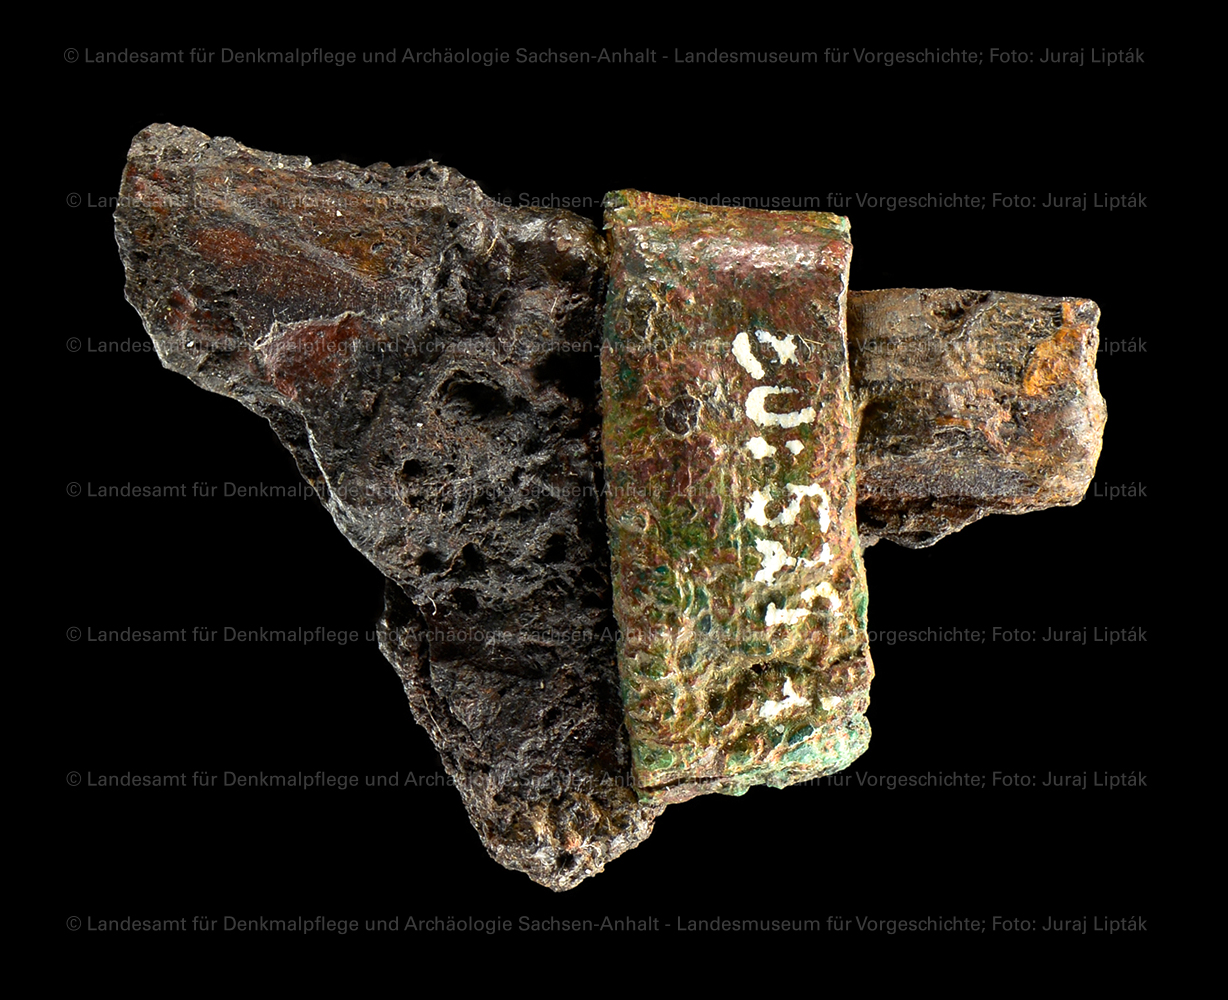 Fragment eines Messers aus Grab 44 von Schkopau, Saalekreis (Landesamt für Denkmalpflege und Archäologie Sachsen-Anhalt - Landesmuseum für Vorgeschichte RR-F)